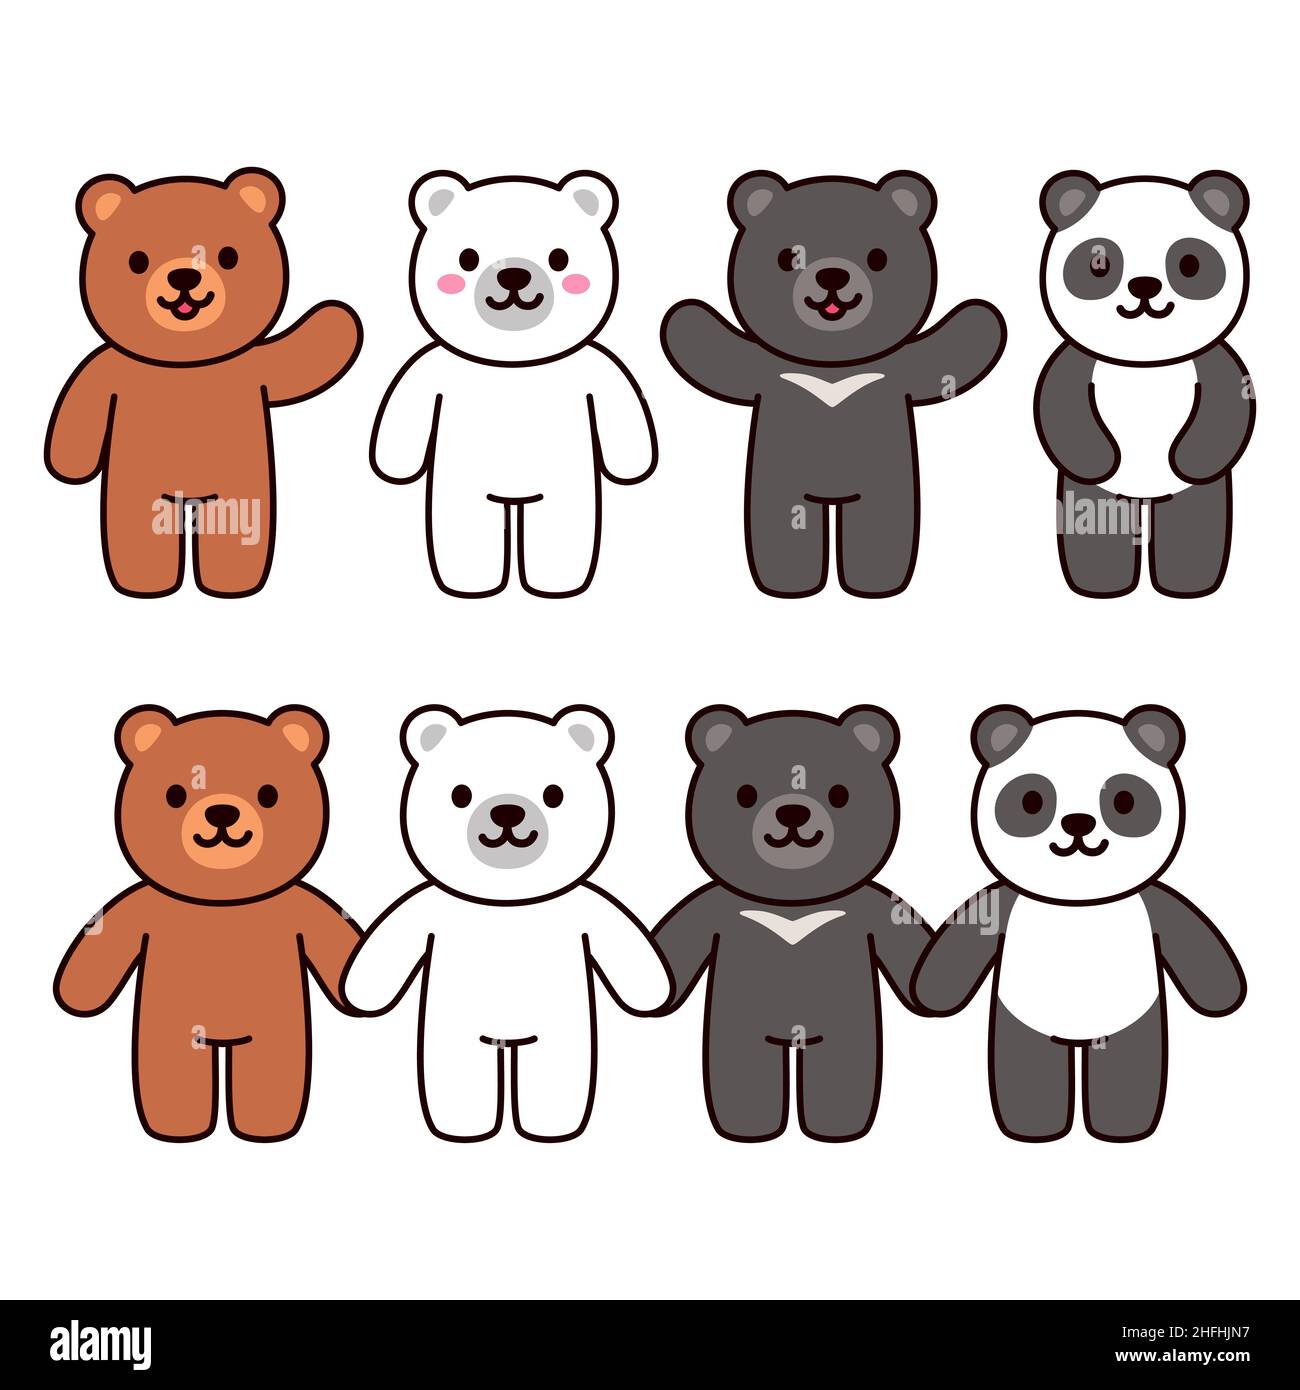 Niedliche Cartoon-Bären Set: Braun, schwarz, weiß und Pandabär. Winken und Hände halten. Kawaii-Zeichenvektordarstellung. Stock Vektor